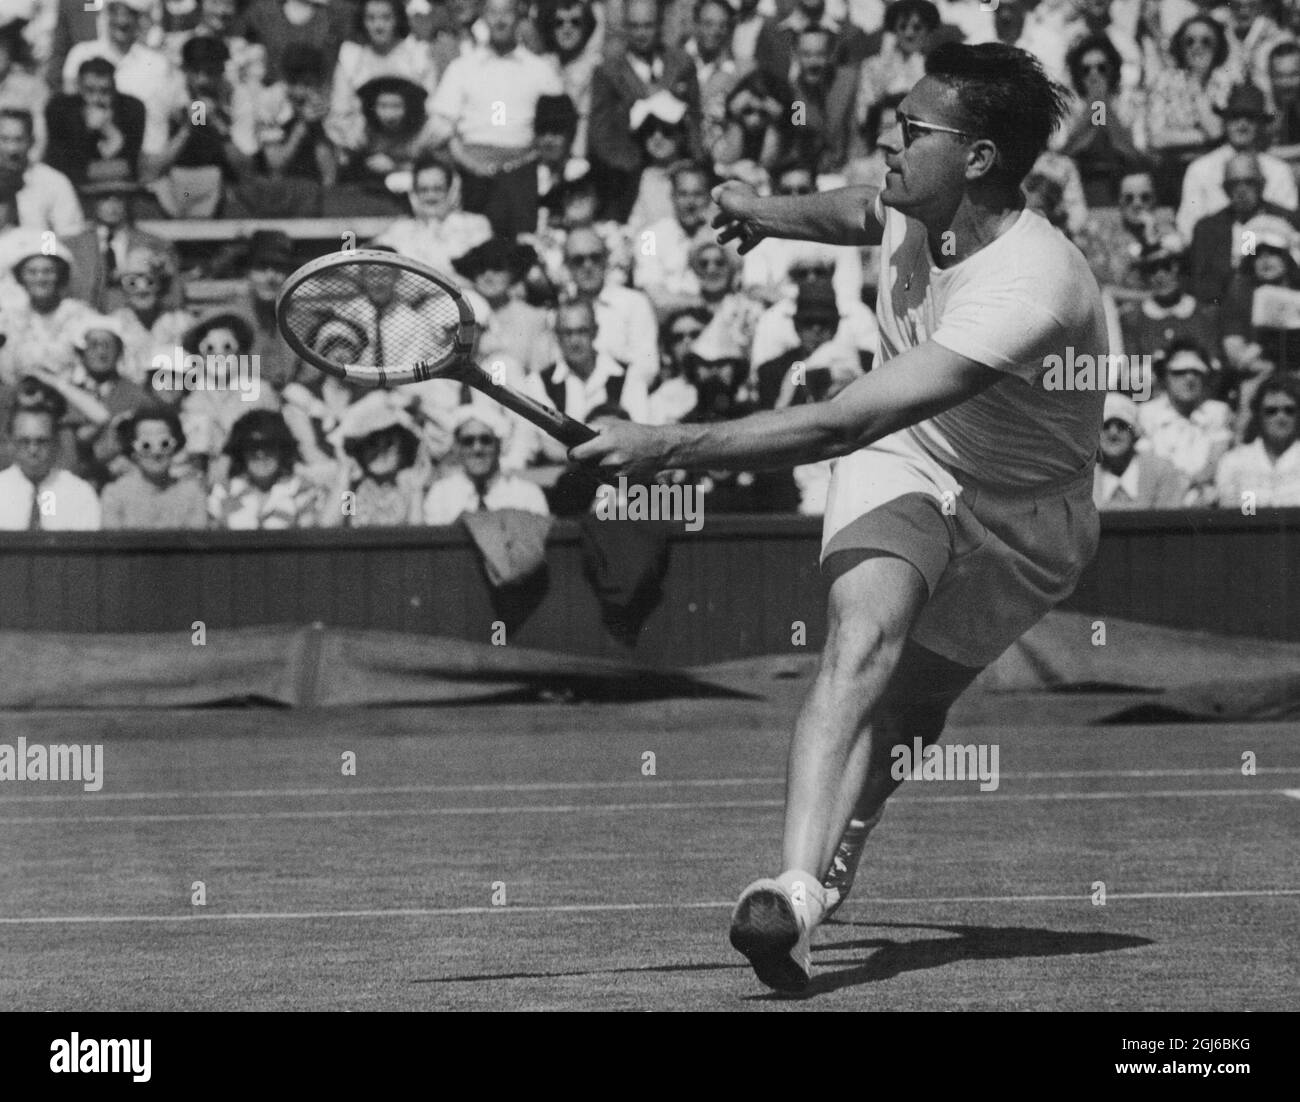 Jaroslav Drobny - Asso da tennis ceco (ora cittadino egiziano) - Wimbledon - 23 giugno 1949 Foto Stock